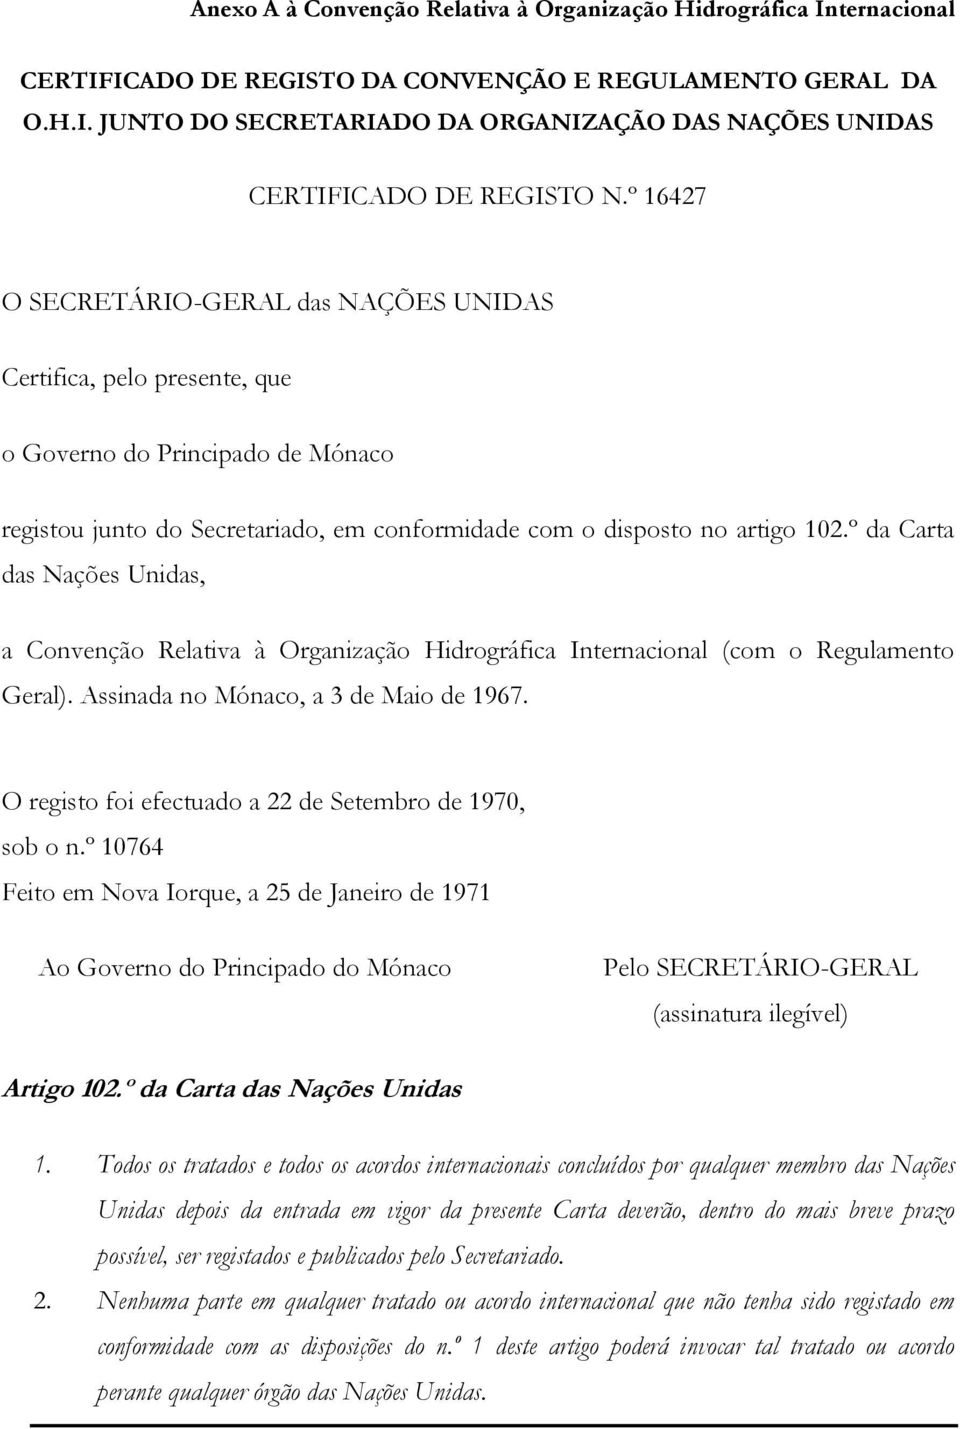 º da Carta das Nações Unidas, a Convenção Relativa à Organização Hidrográfica Internacional (com o Regulamento Geral). Assinada no Mónaco, a 3 de Maio de 1967.